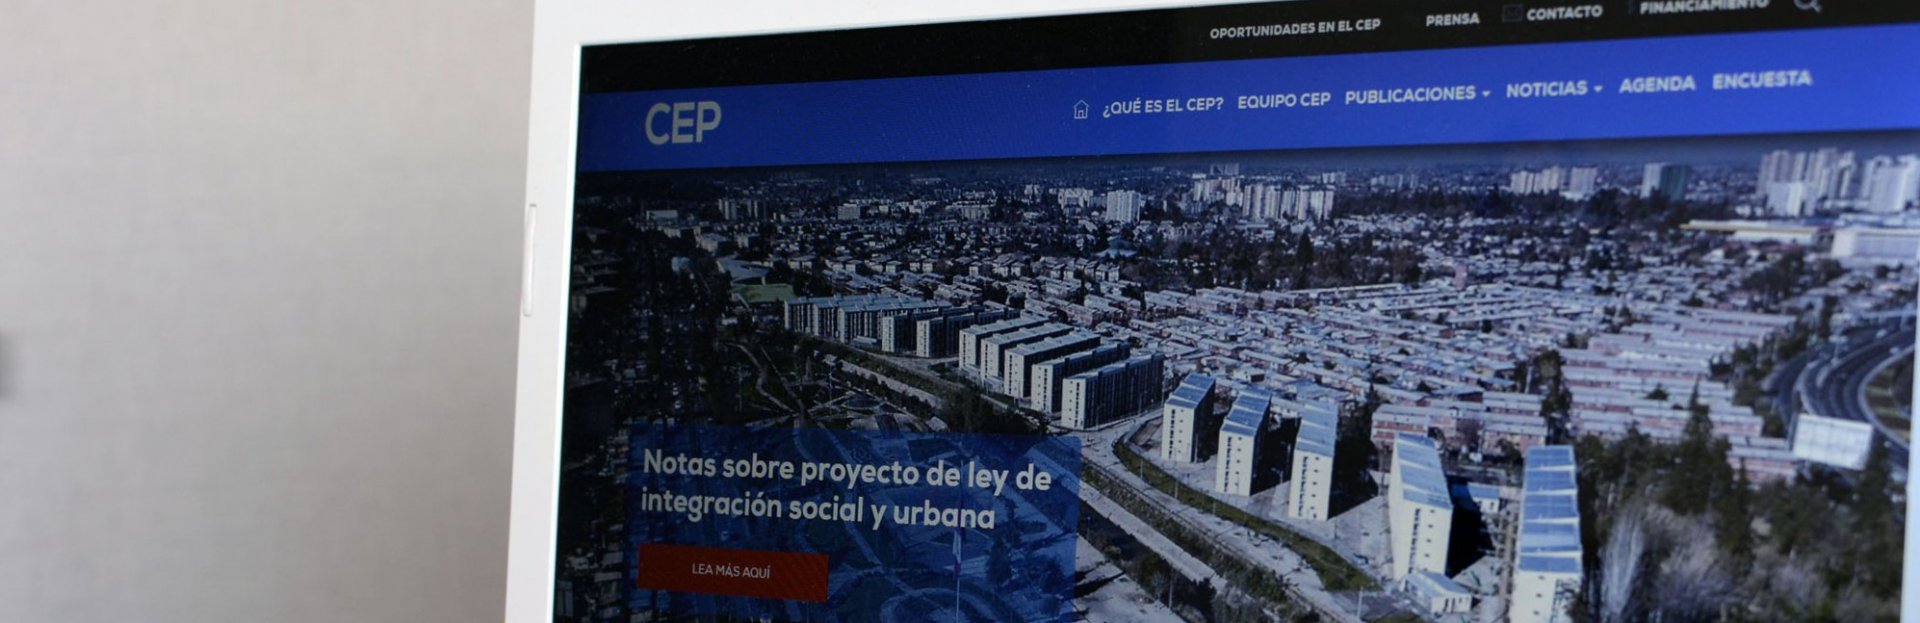 Pantalla mostrando el sitio del CEP